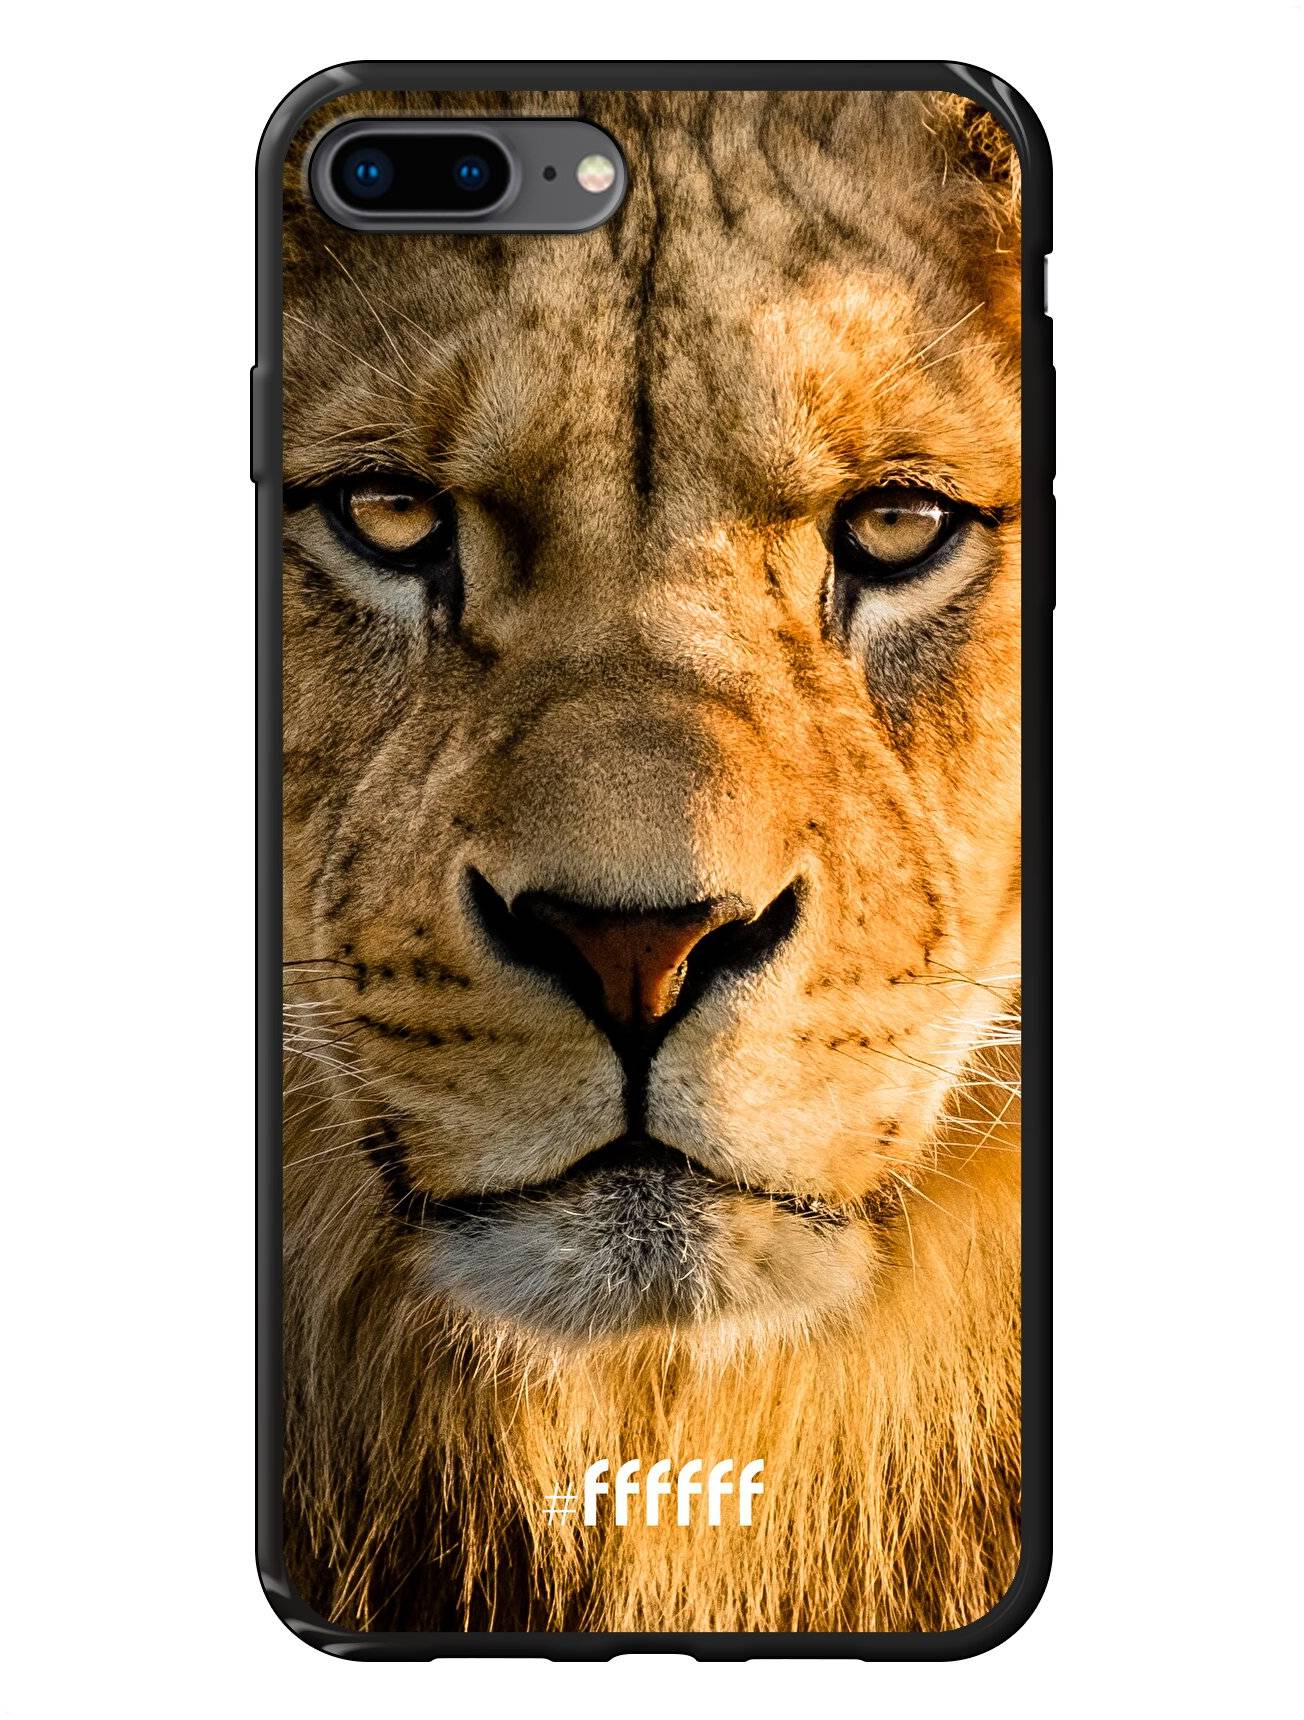 Leo iPhone 7 Plus